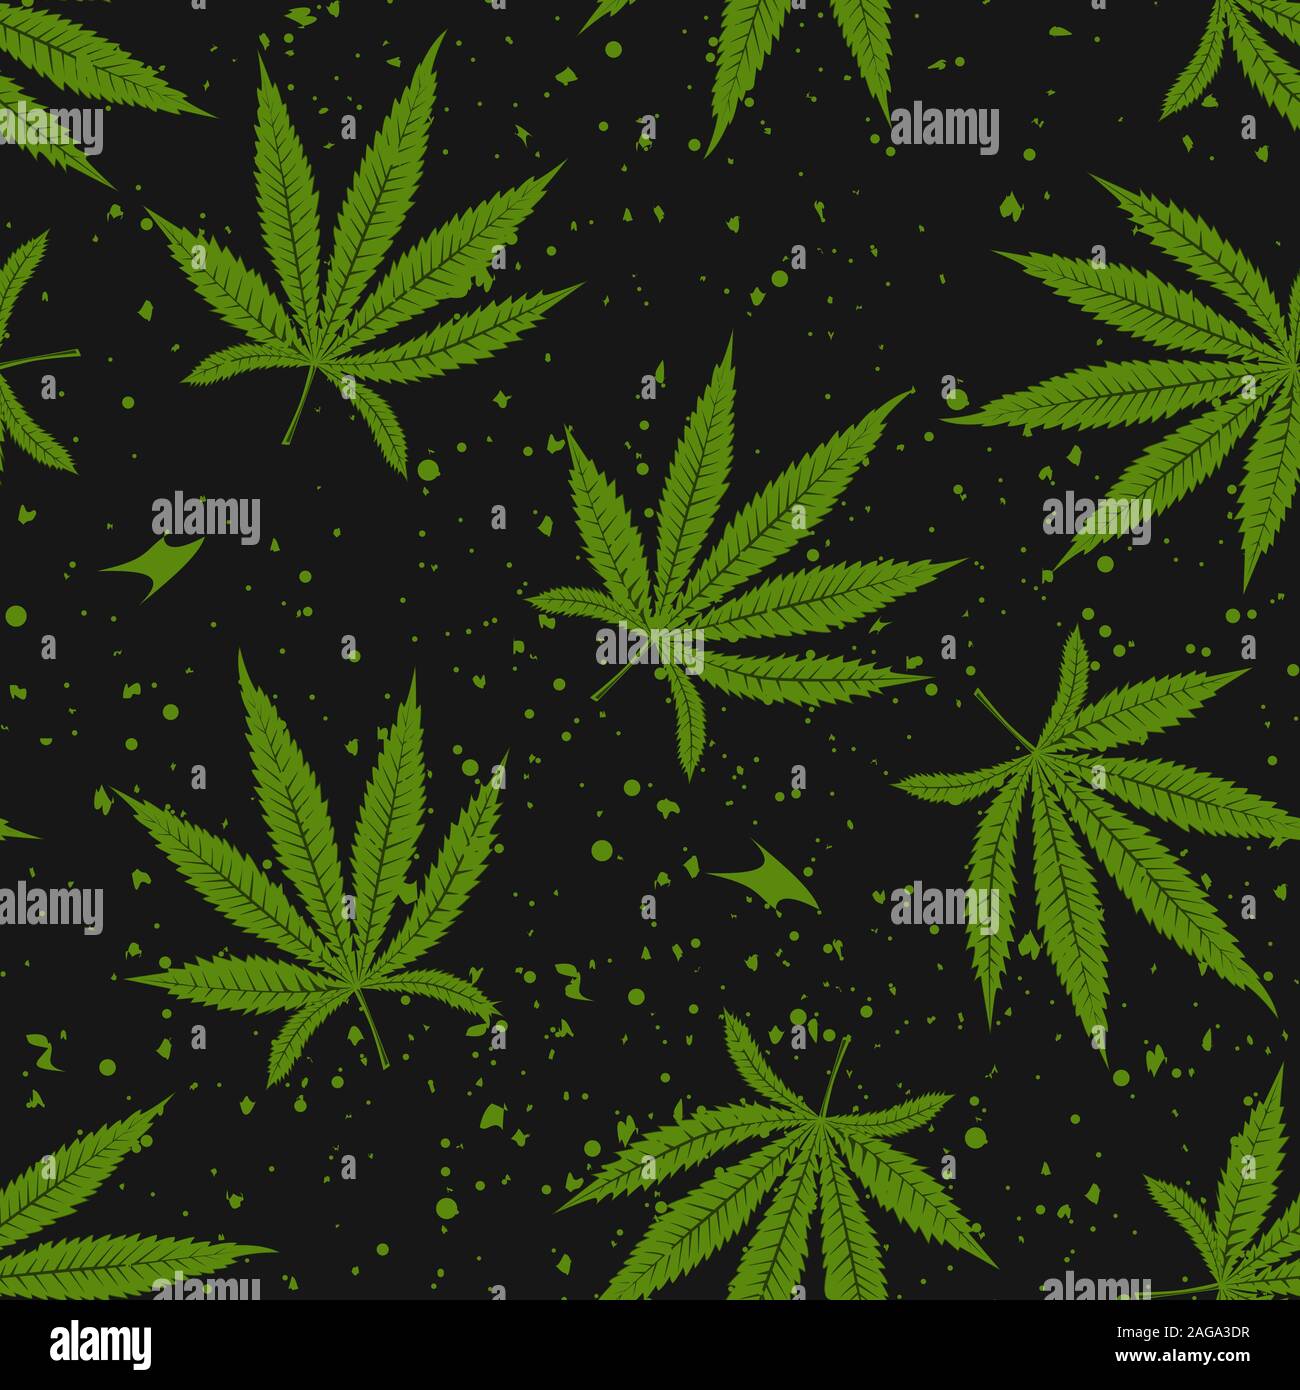 La marihuana Green Leaf patrón sin fisuras. El cáñamo Cannabis marijuana v ector ilustración de fondo. Ilustración del Vector